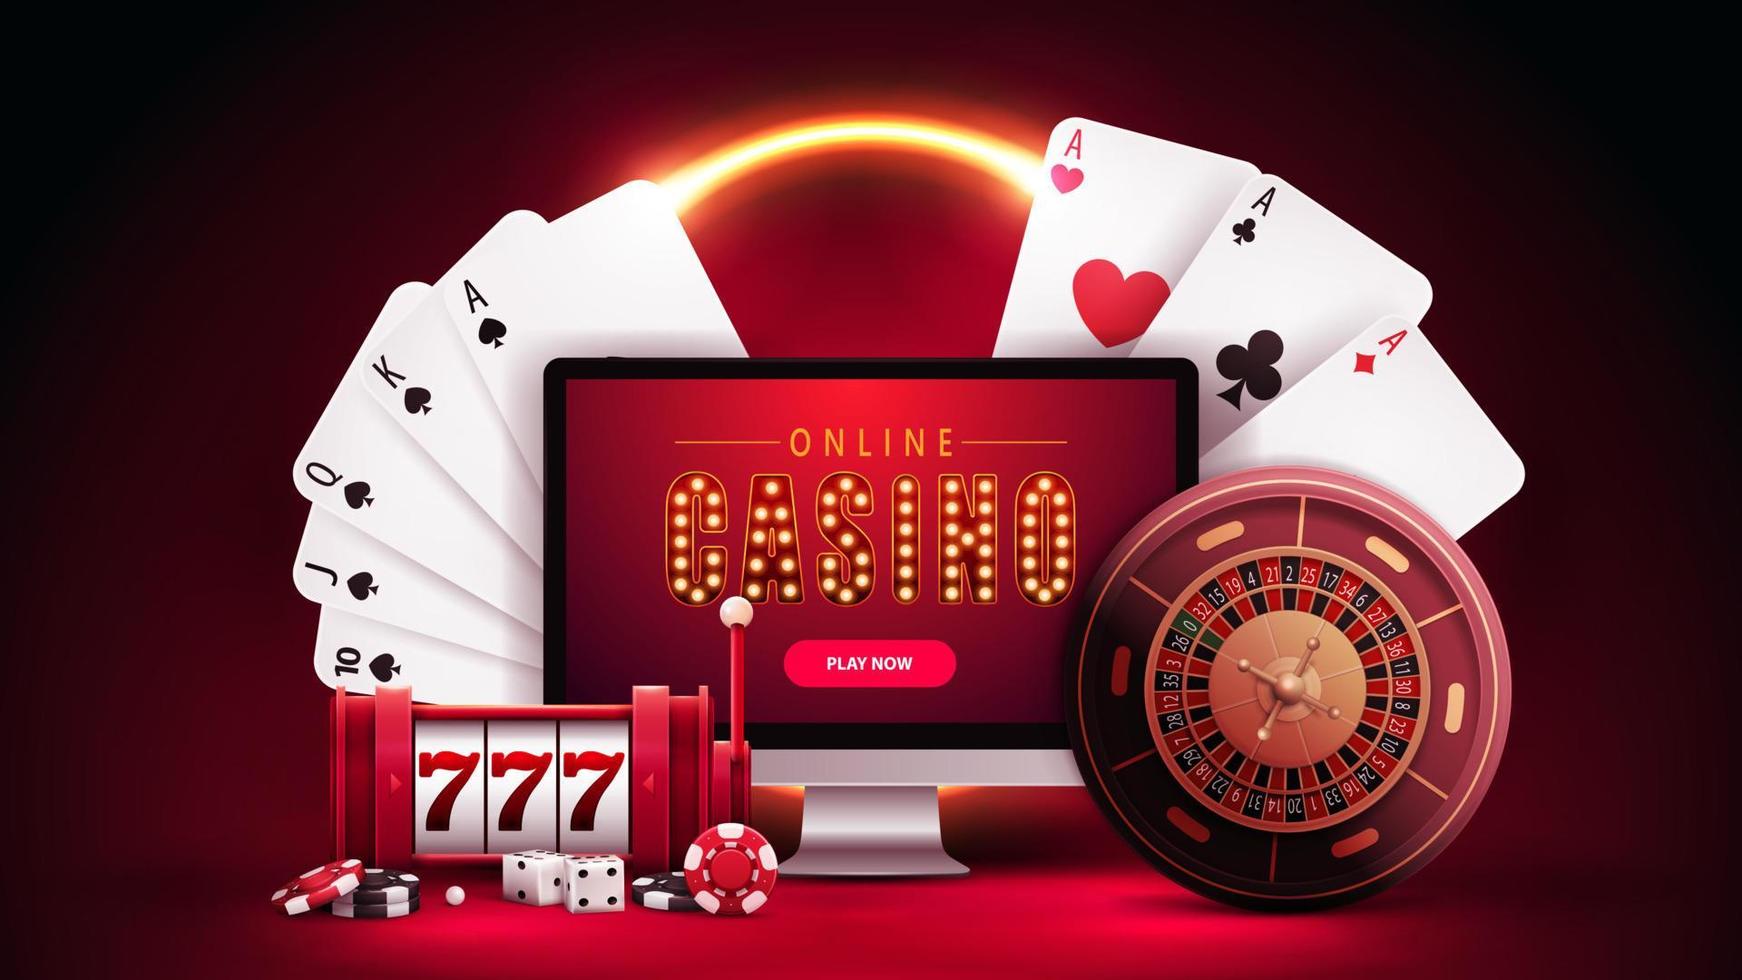 Online-Casino, rotes Banner mit Monitor, Spielautomat, Casino-Roulette, Pokerchips und Spielkarten in roter Szene mit orangefarbenem Neonring im Hintergrund. vektor